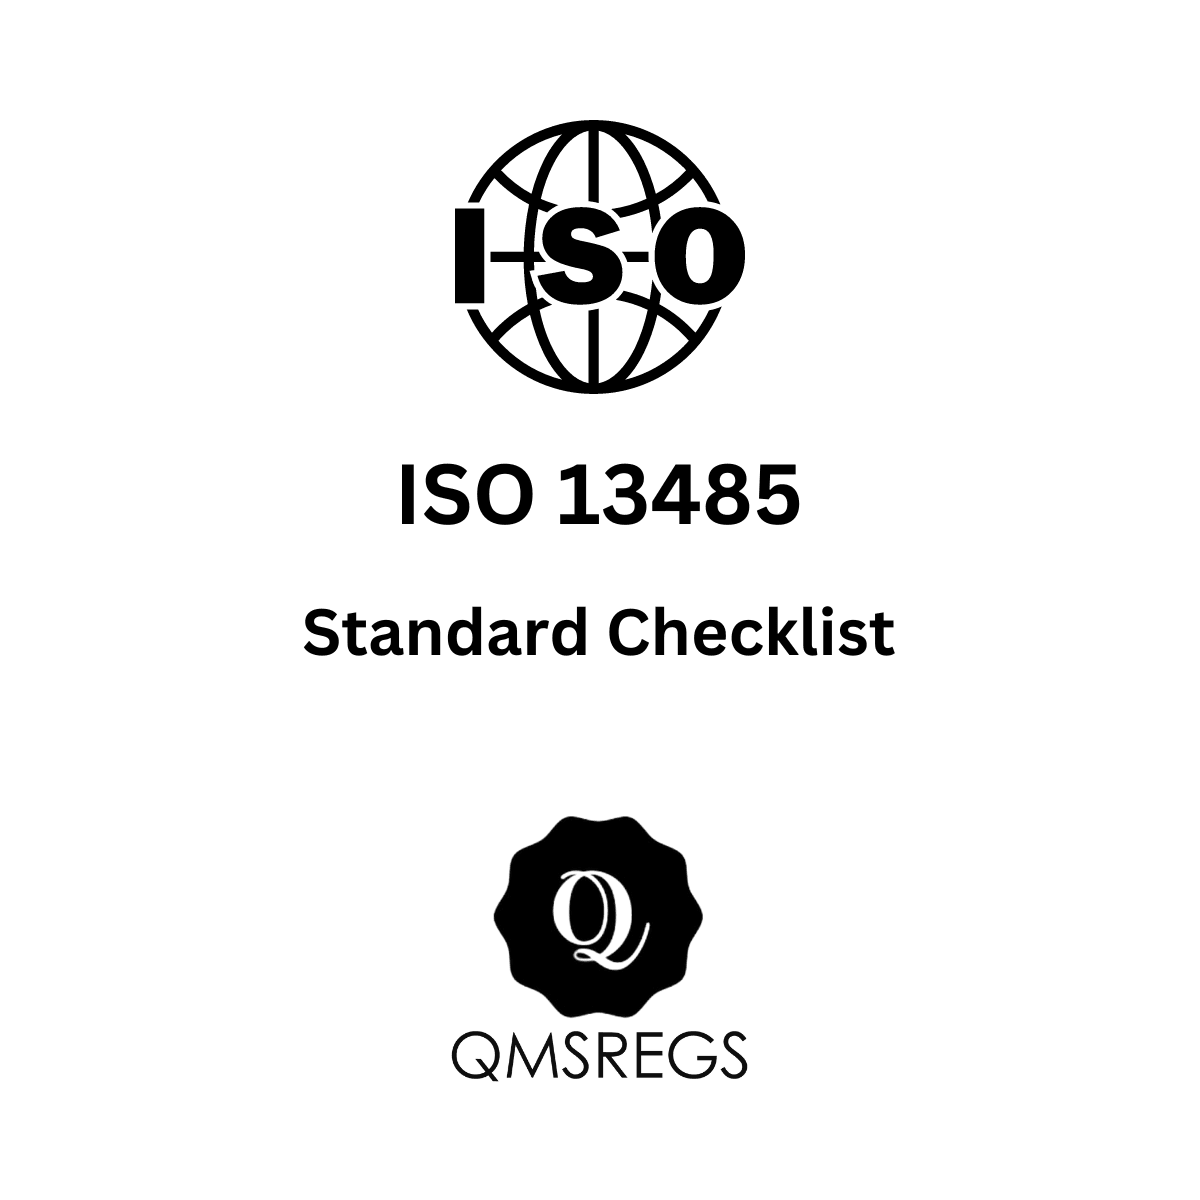 ISO 13485 Standard Checklist